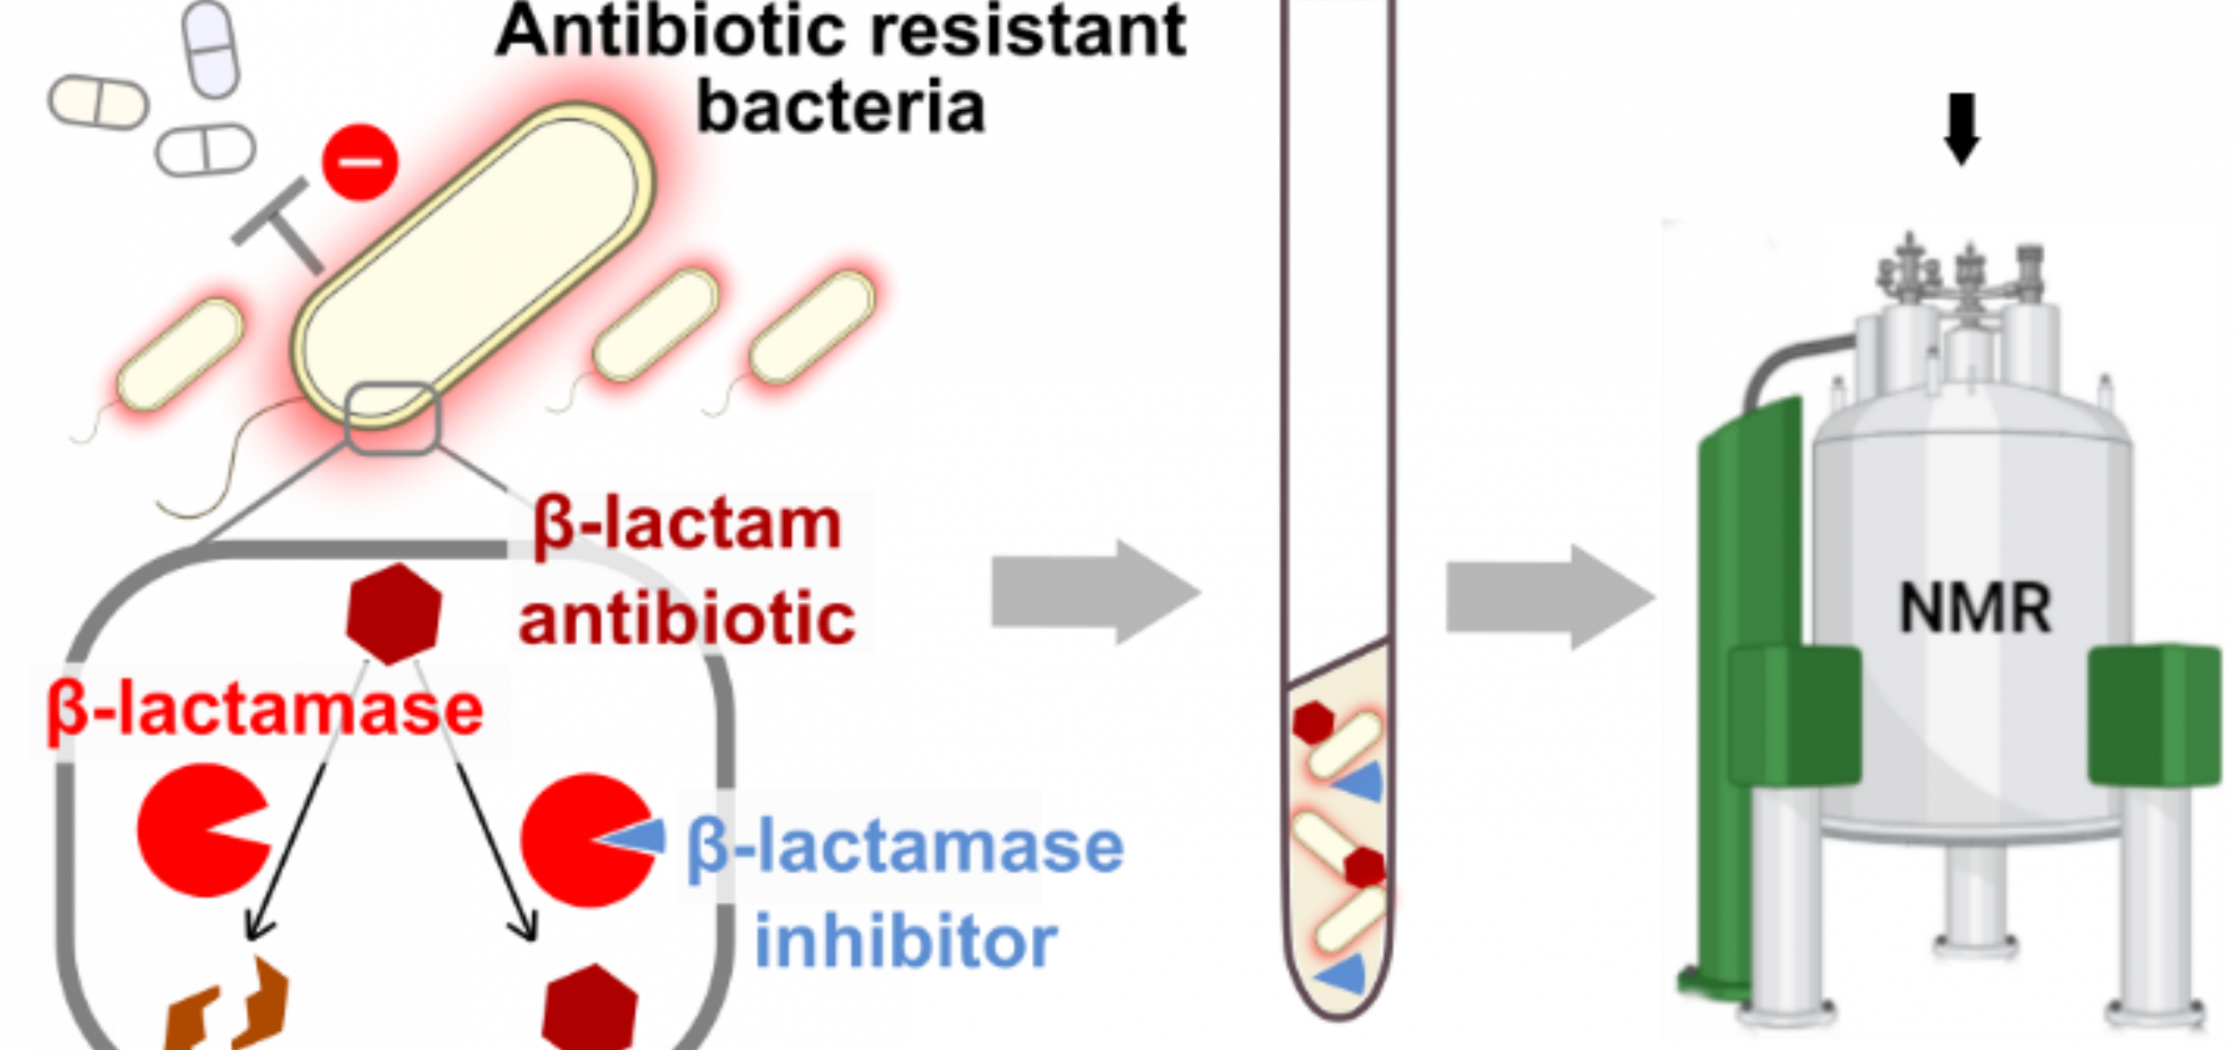 Suivi des interactions entre antibiotiques et leurs cibles au sein de cellules bactériennes par spectroscopie de résonance magnétique nucléaire (RMN) in cell.